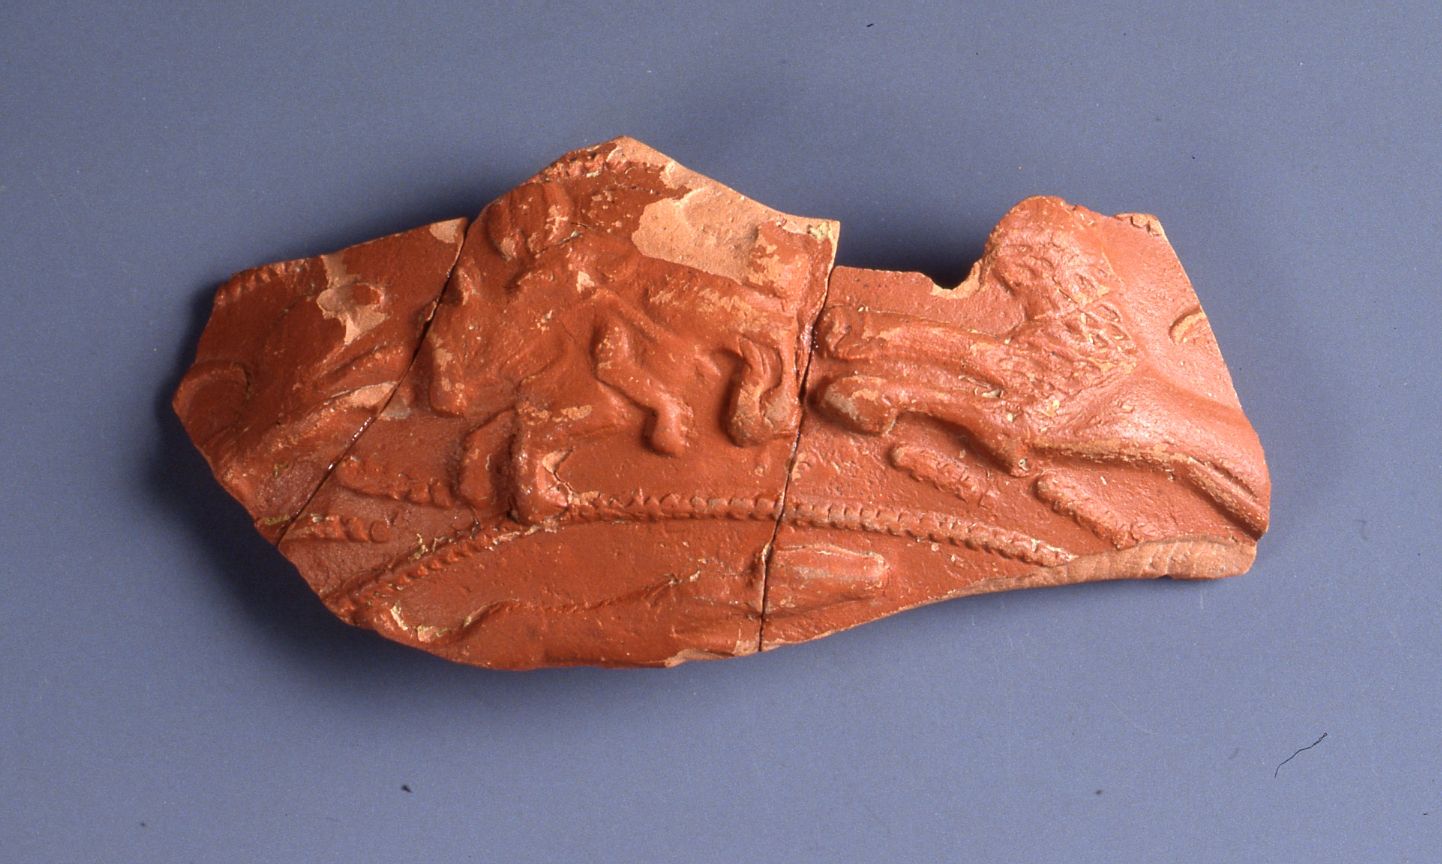 coppa/ emisferica, parete, Dragendorff 37 - ambito gallo romano, produzione di La Graufesenque (I-II)